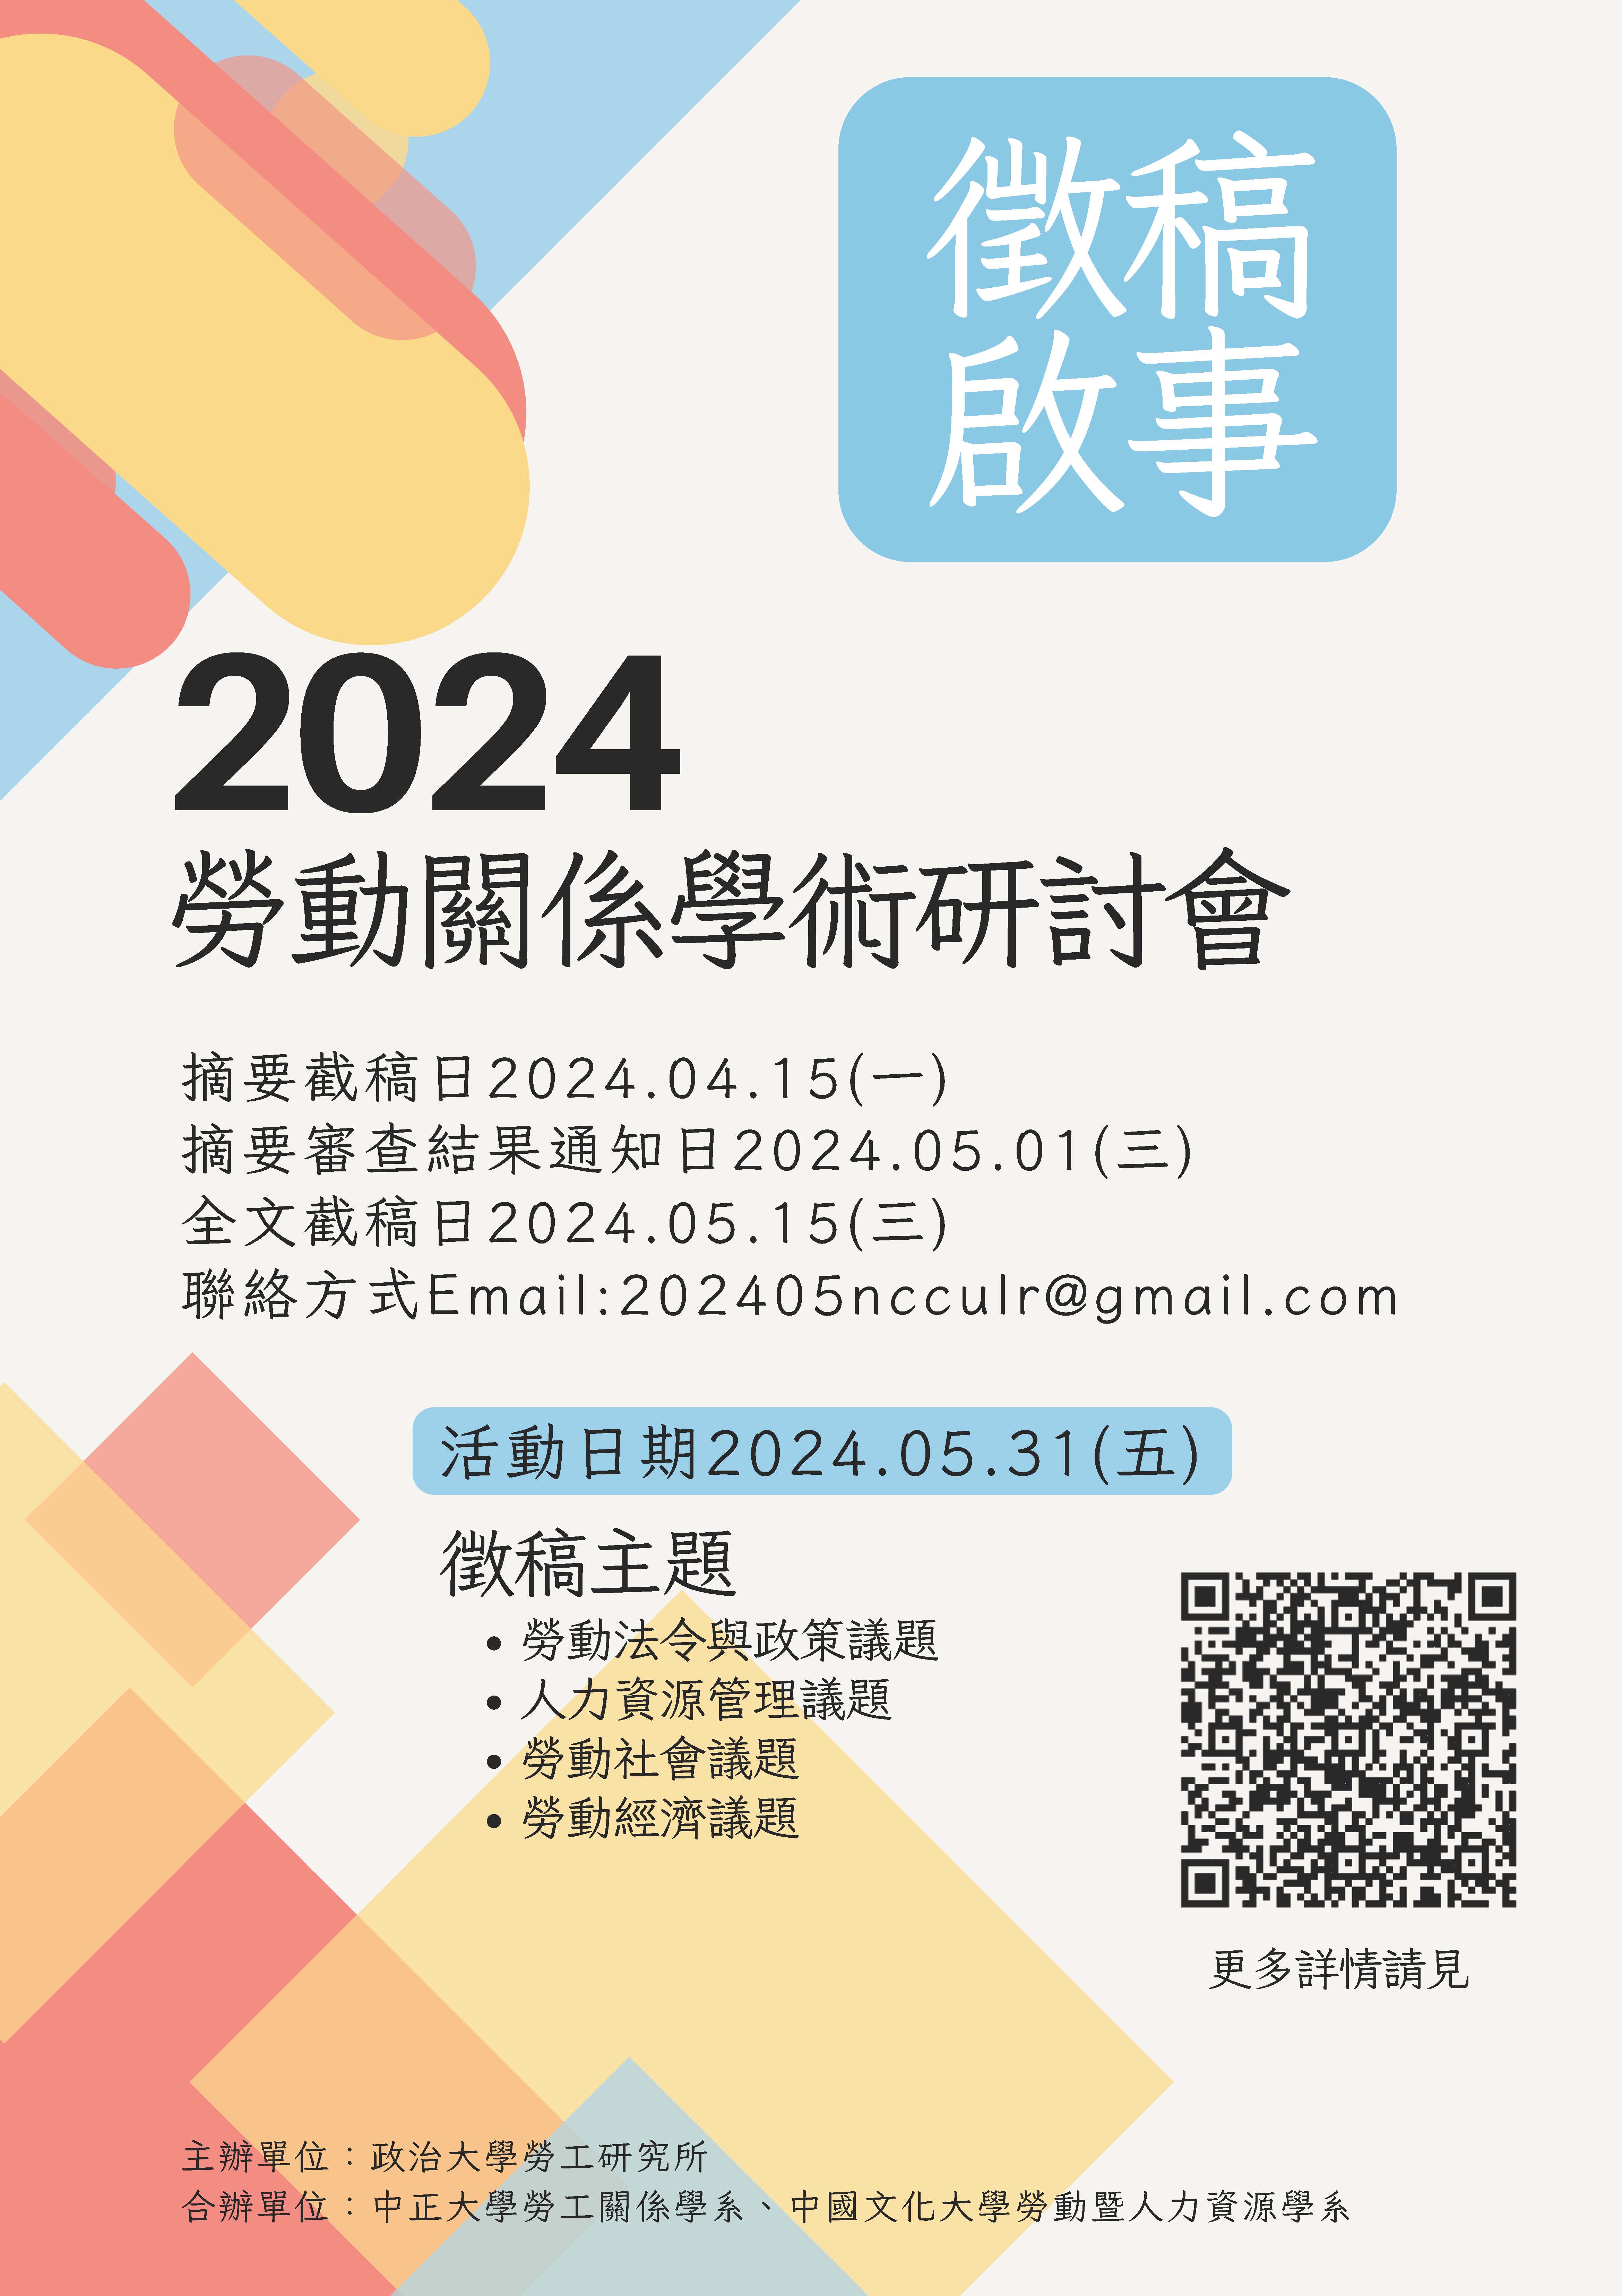 政大勞工所2024年勞動關係學術研討會《徵稿啟事》